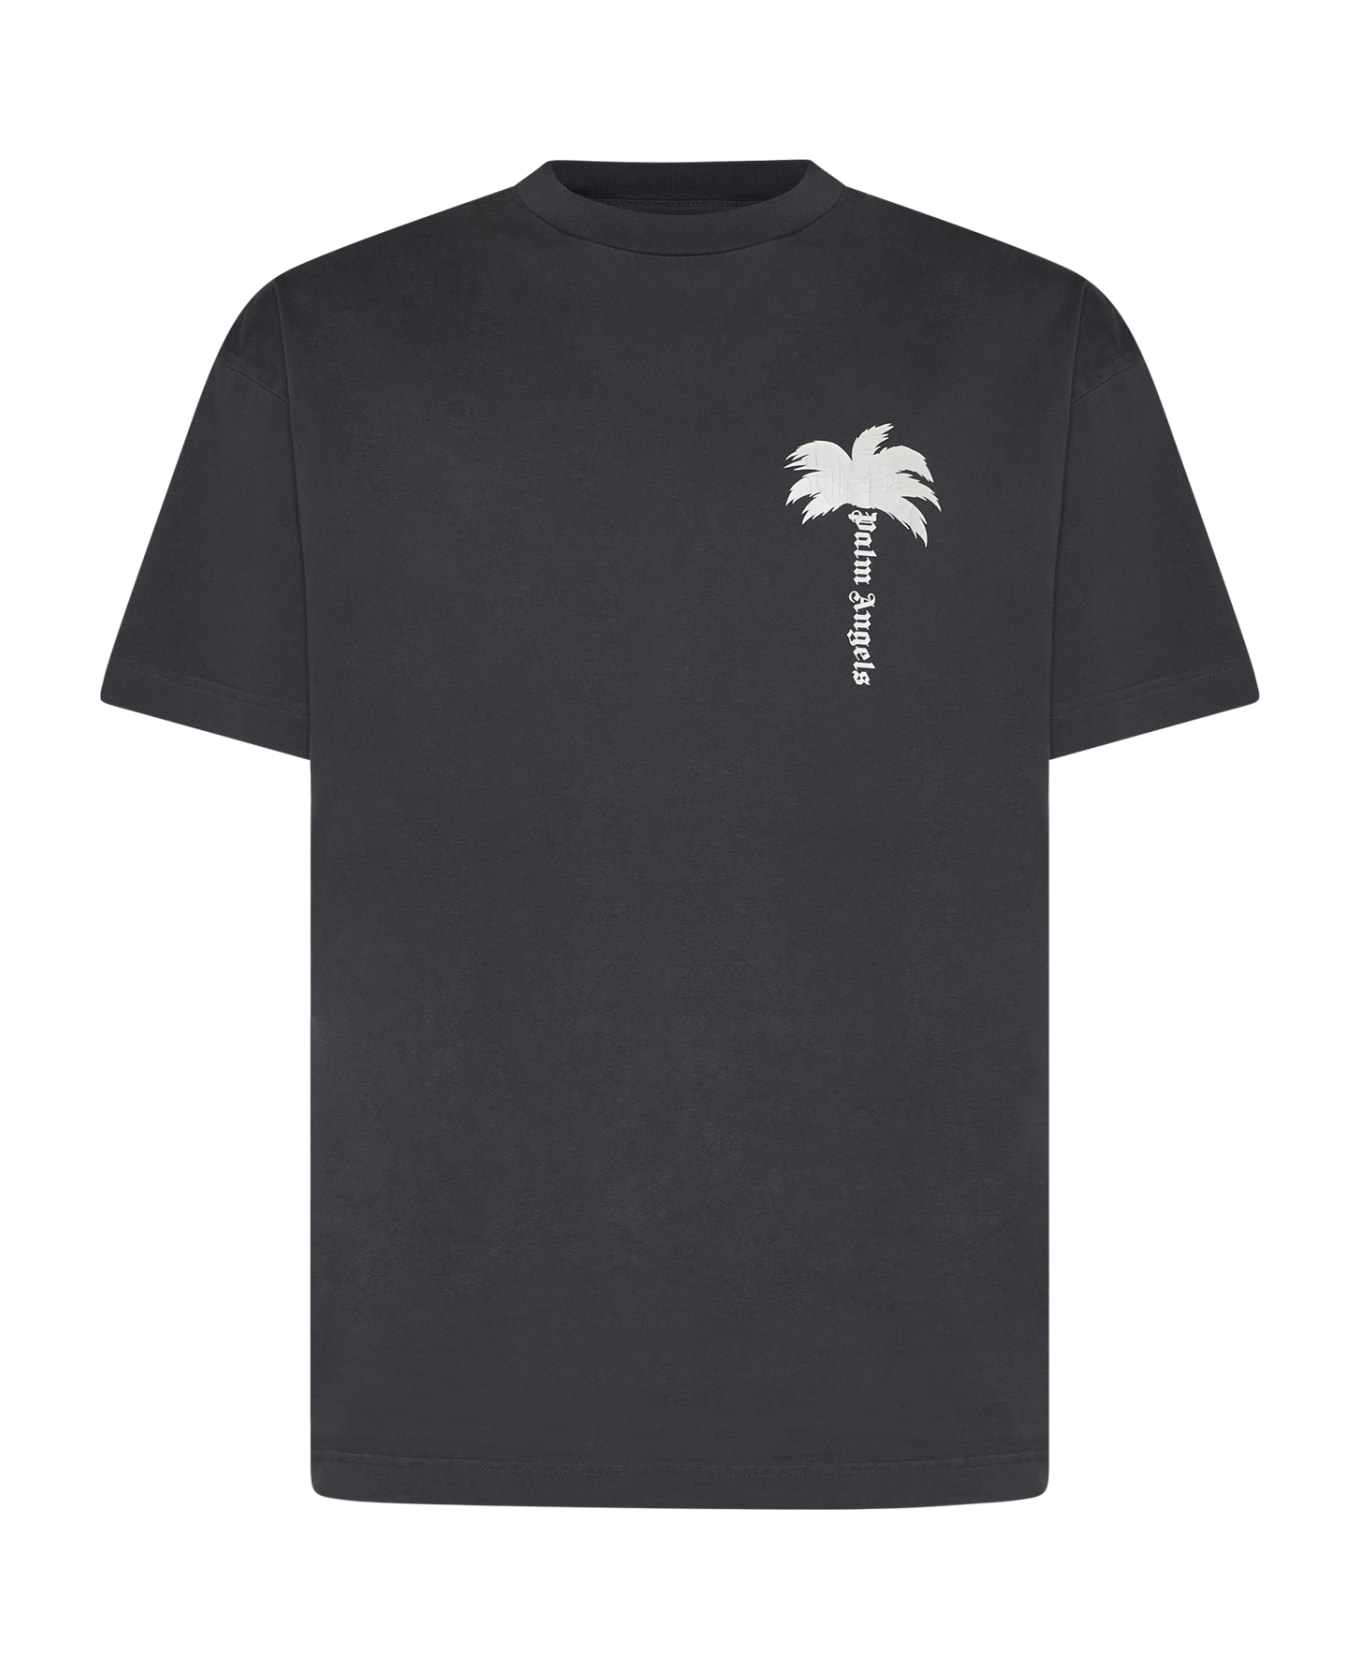 Palm Angels T-Shirt - Dark grey off white